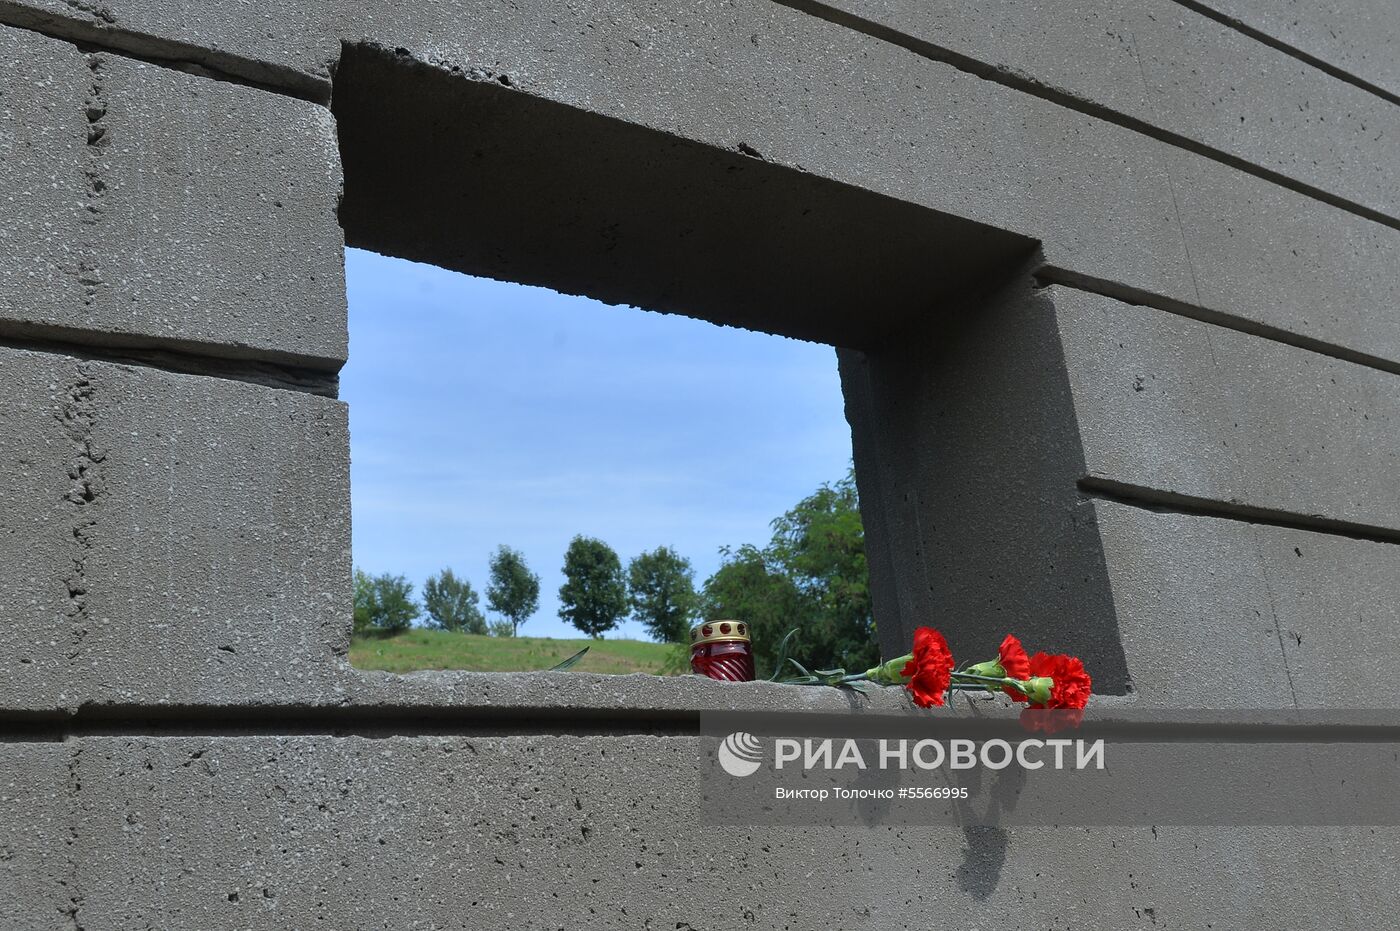 Открытие мемориального комплекса "Тростенец" в Белоруссии